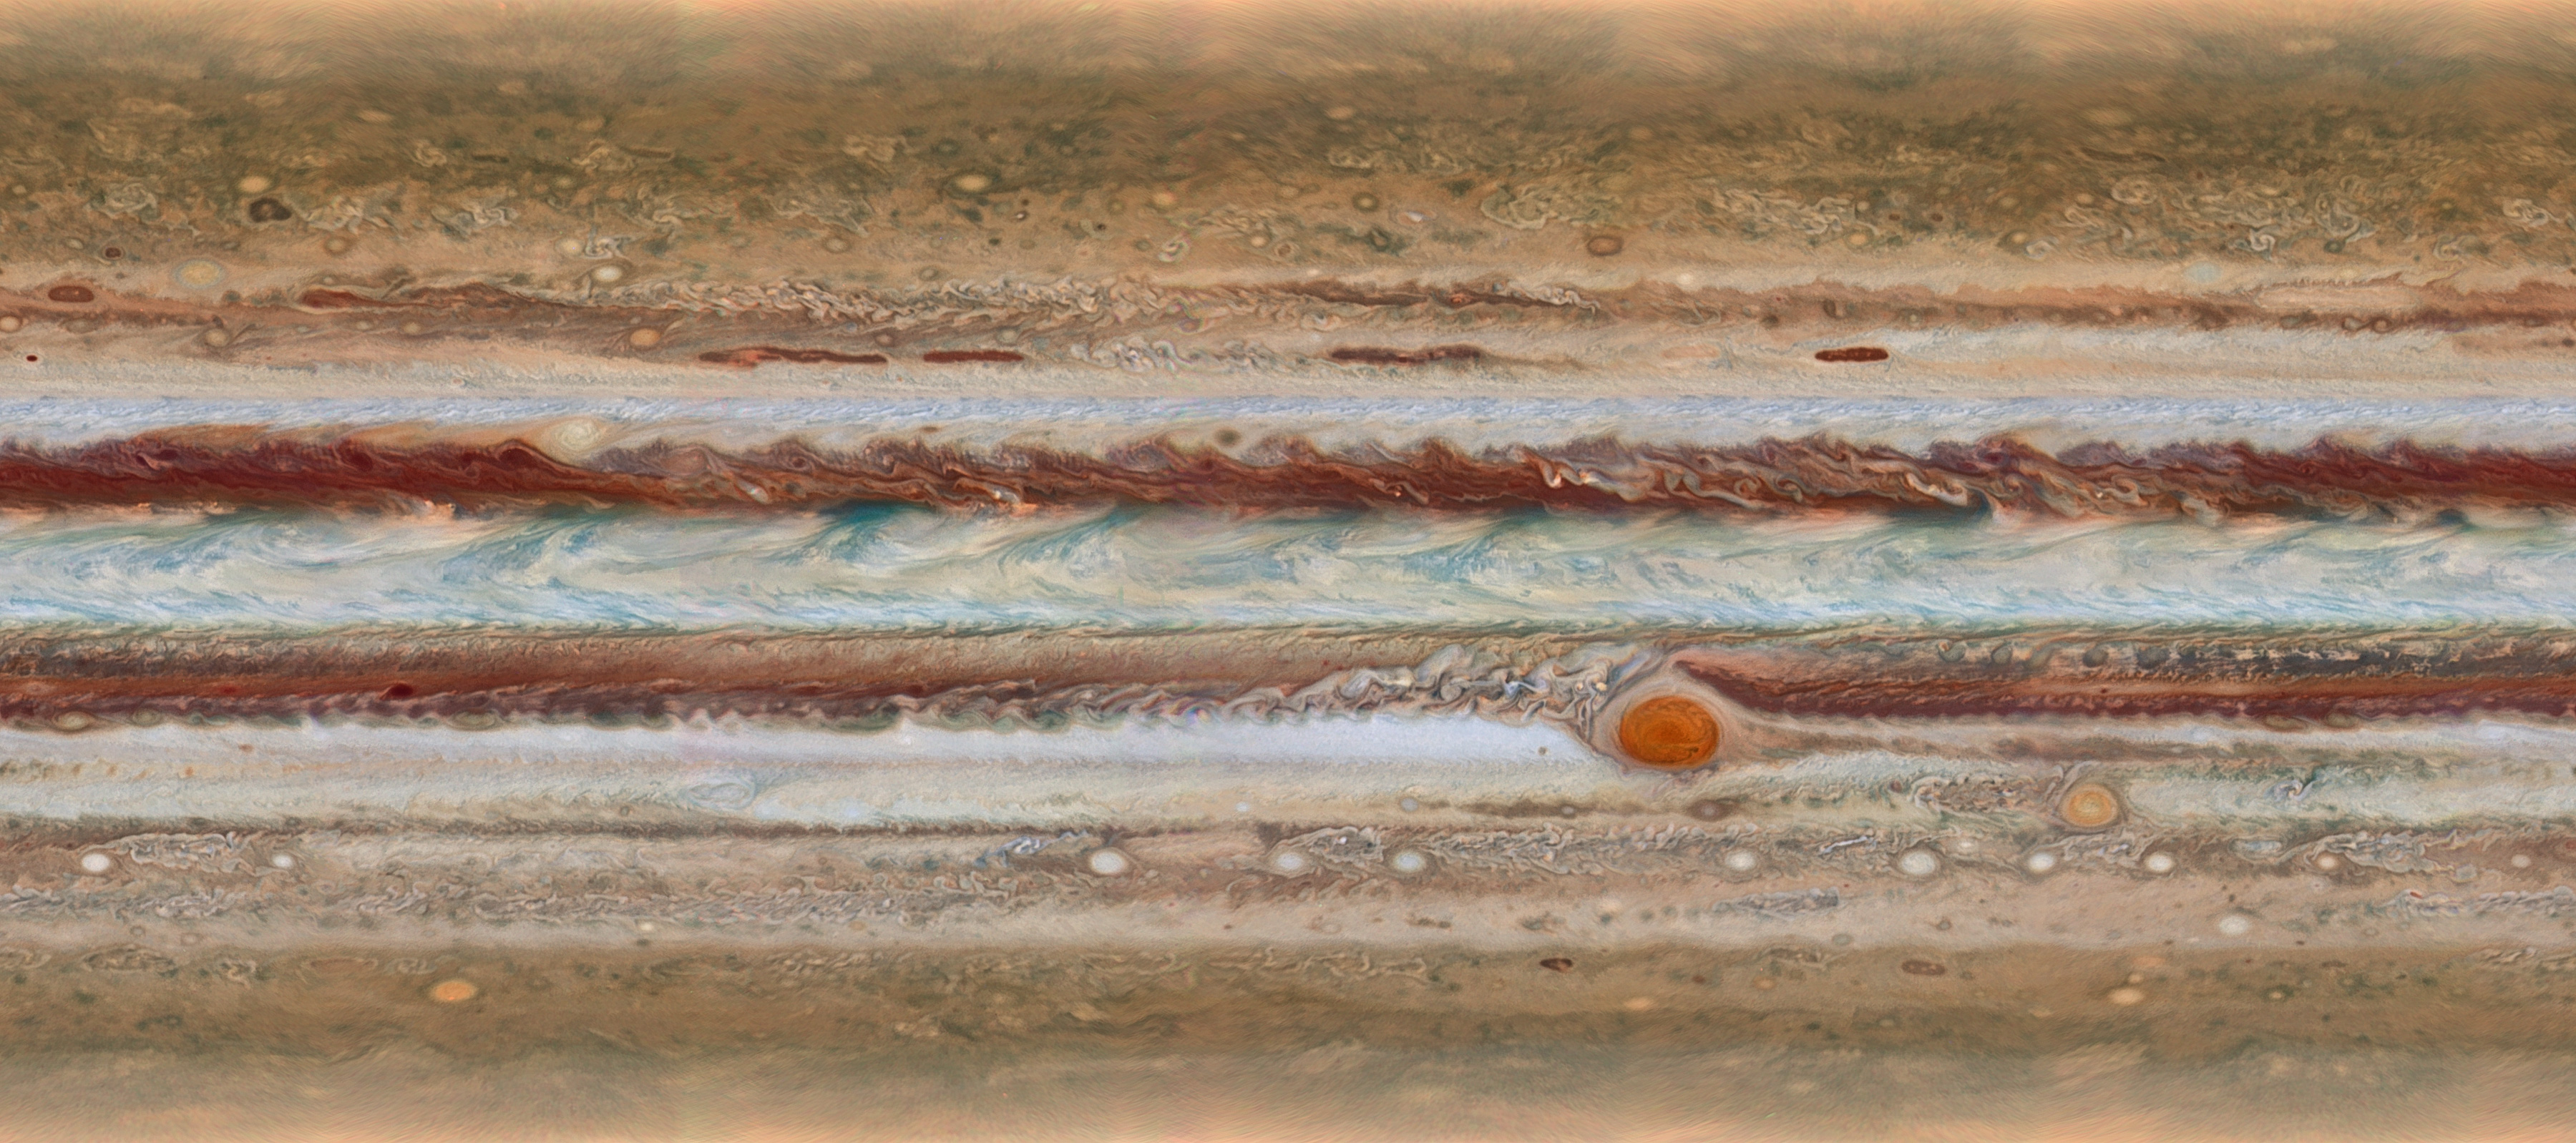 JupiterHST1522a.jpg